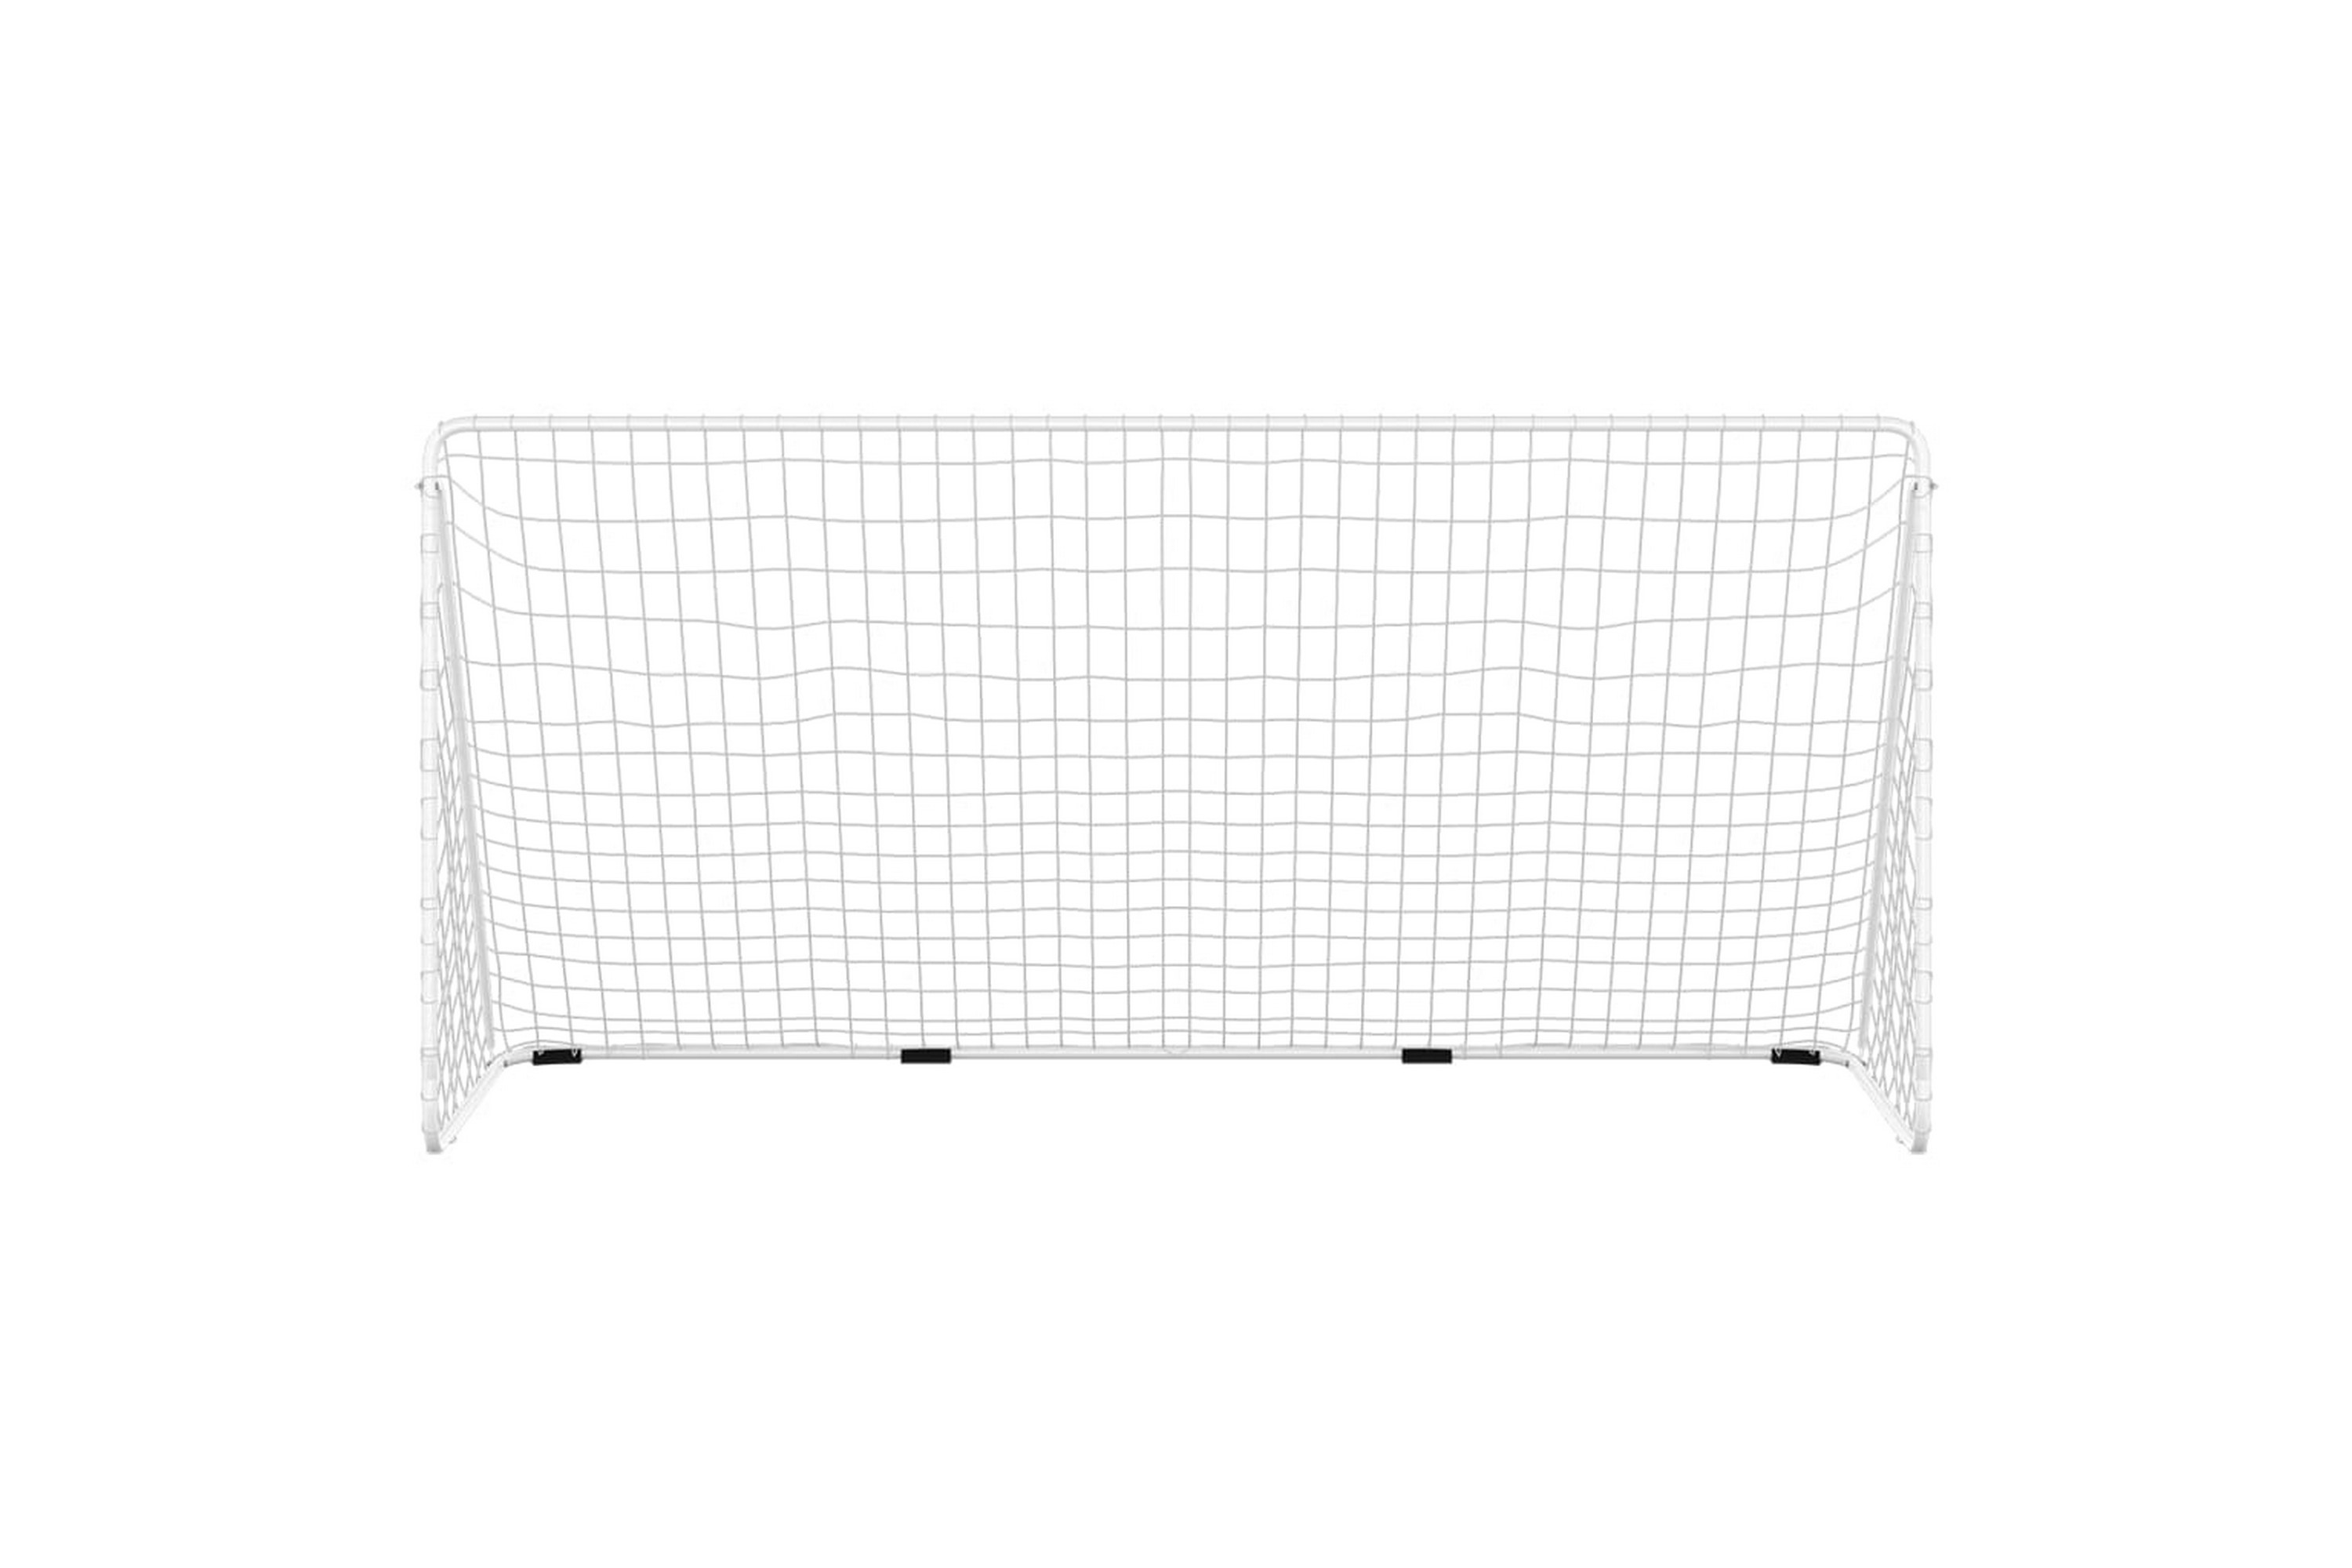 Jalkapallomaali verkolla valkoinen 366x122x182 cm teräs - Valkoinen